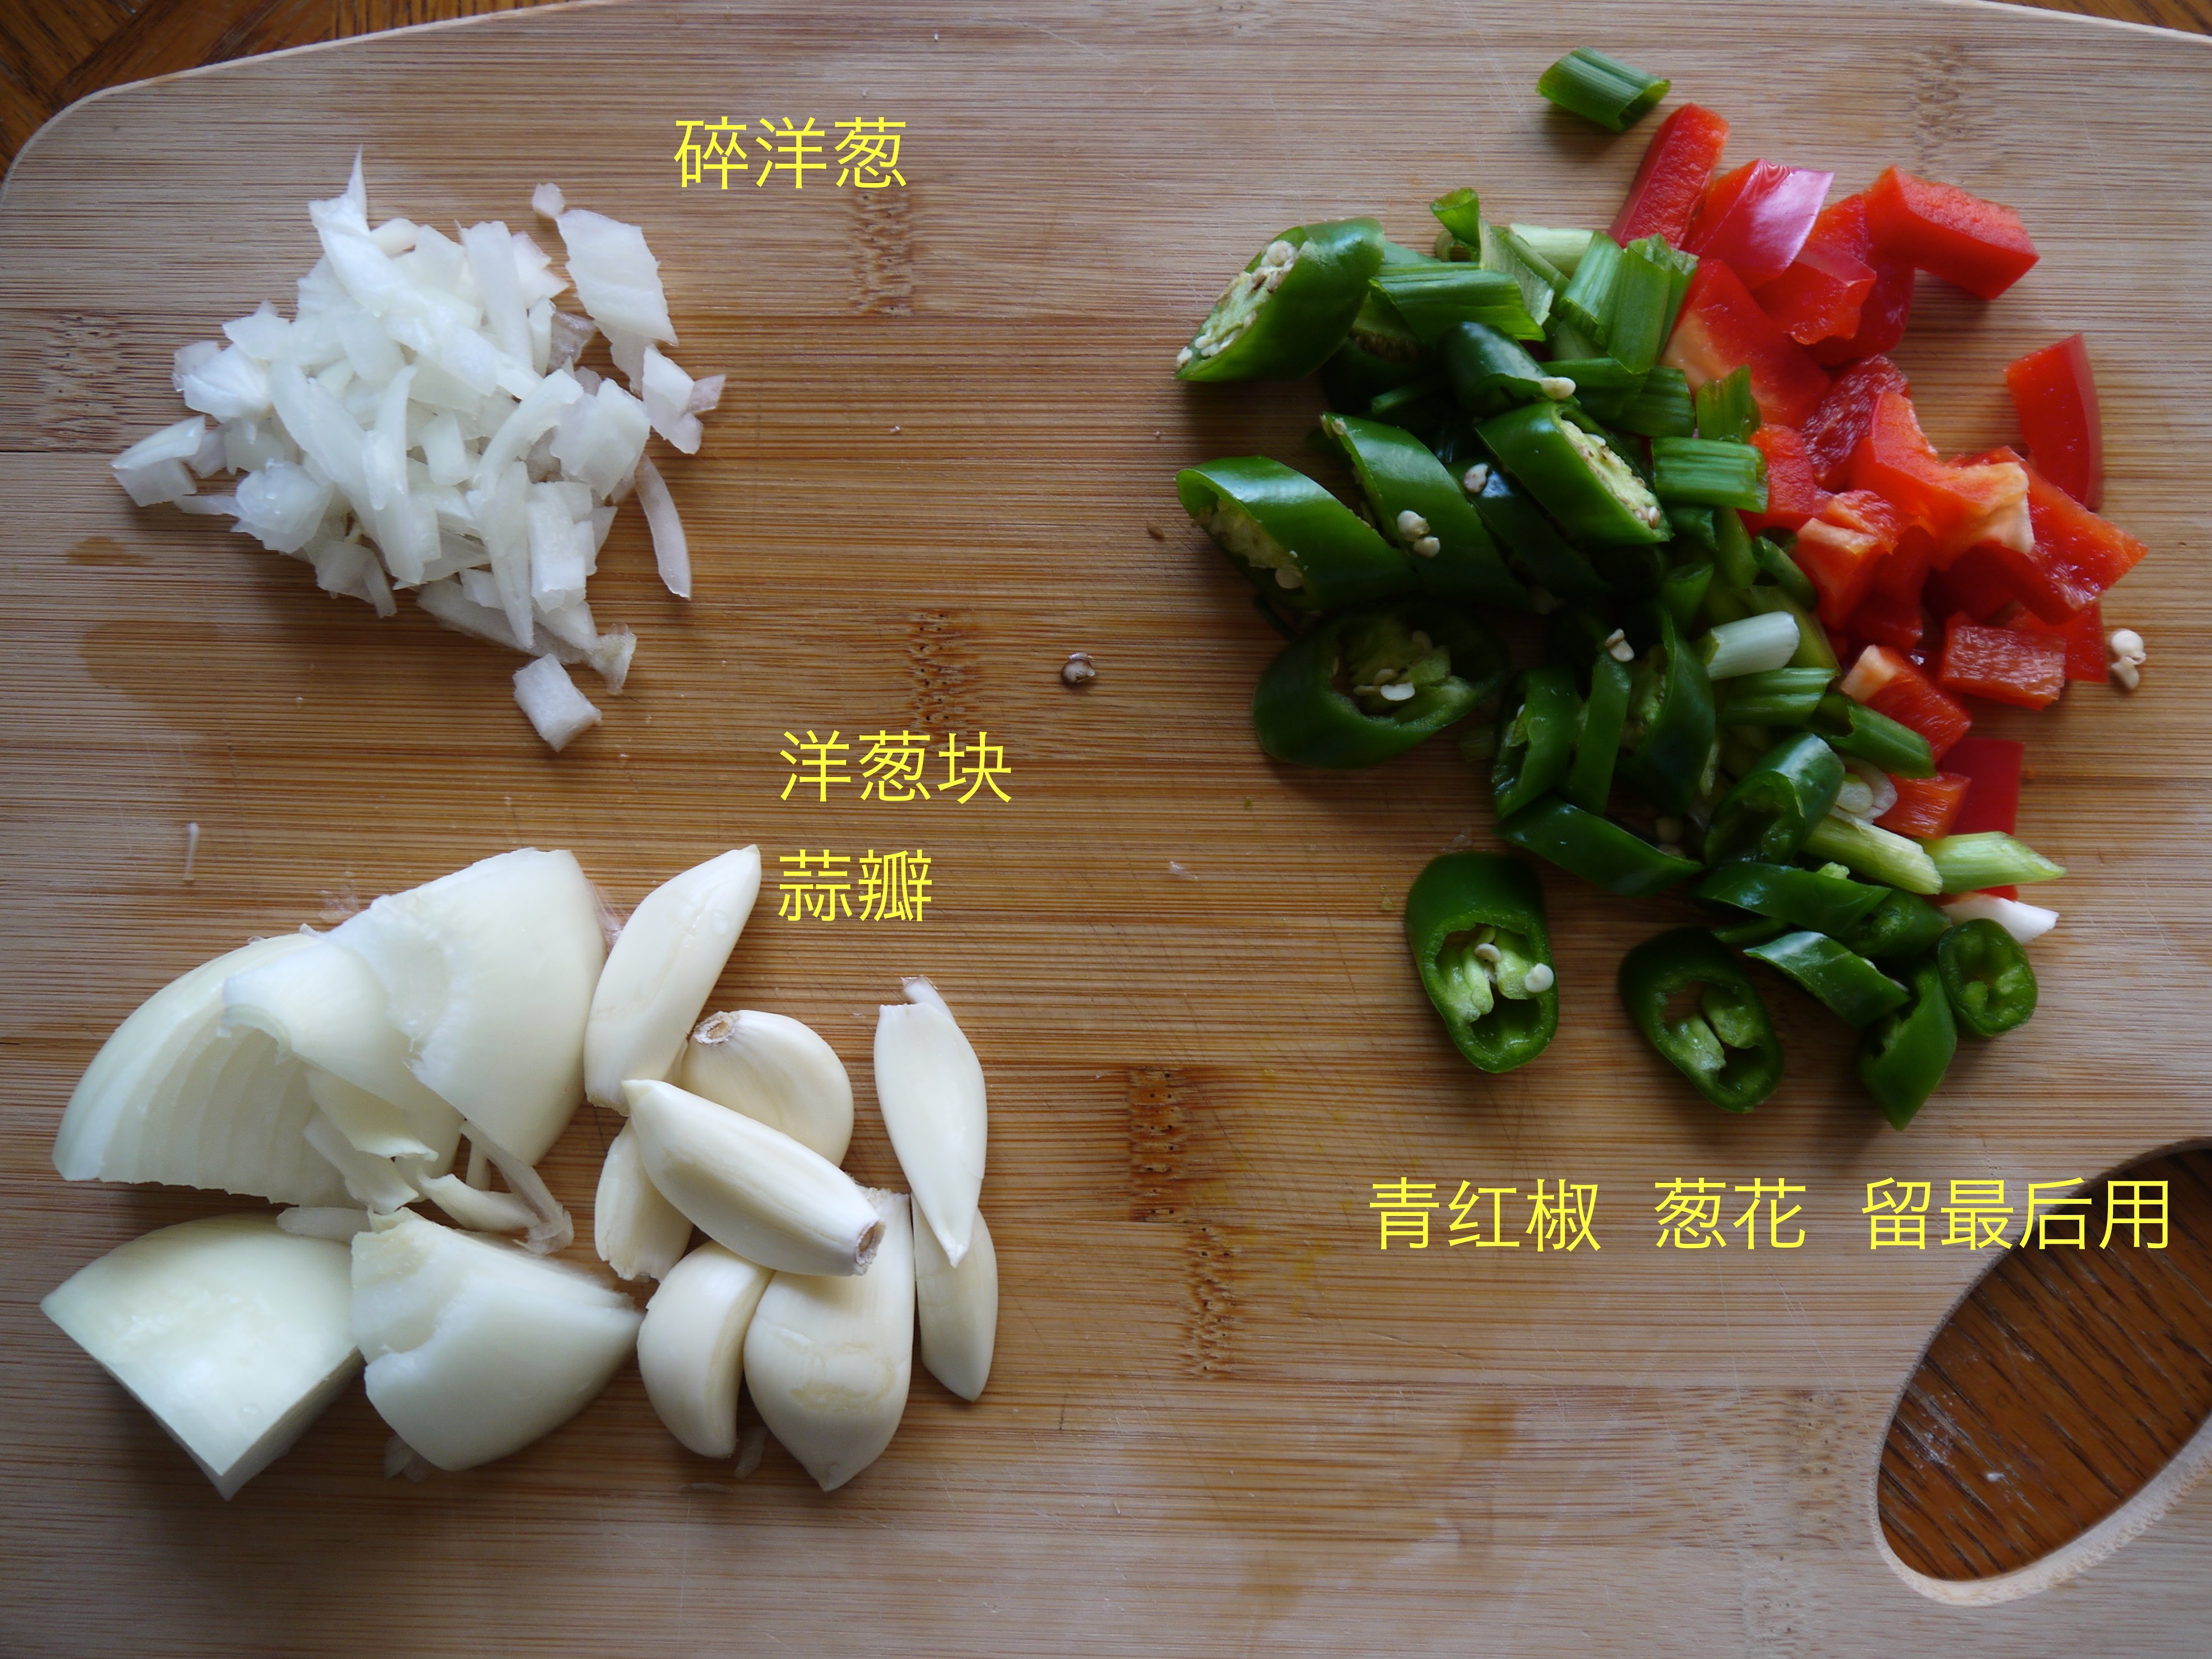 韓式豆腐湯 순두부 찌개 (附湯底做法)的做法 步骤2